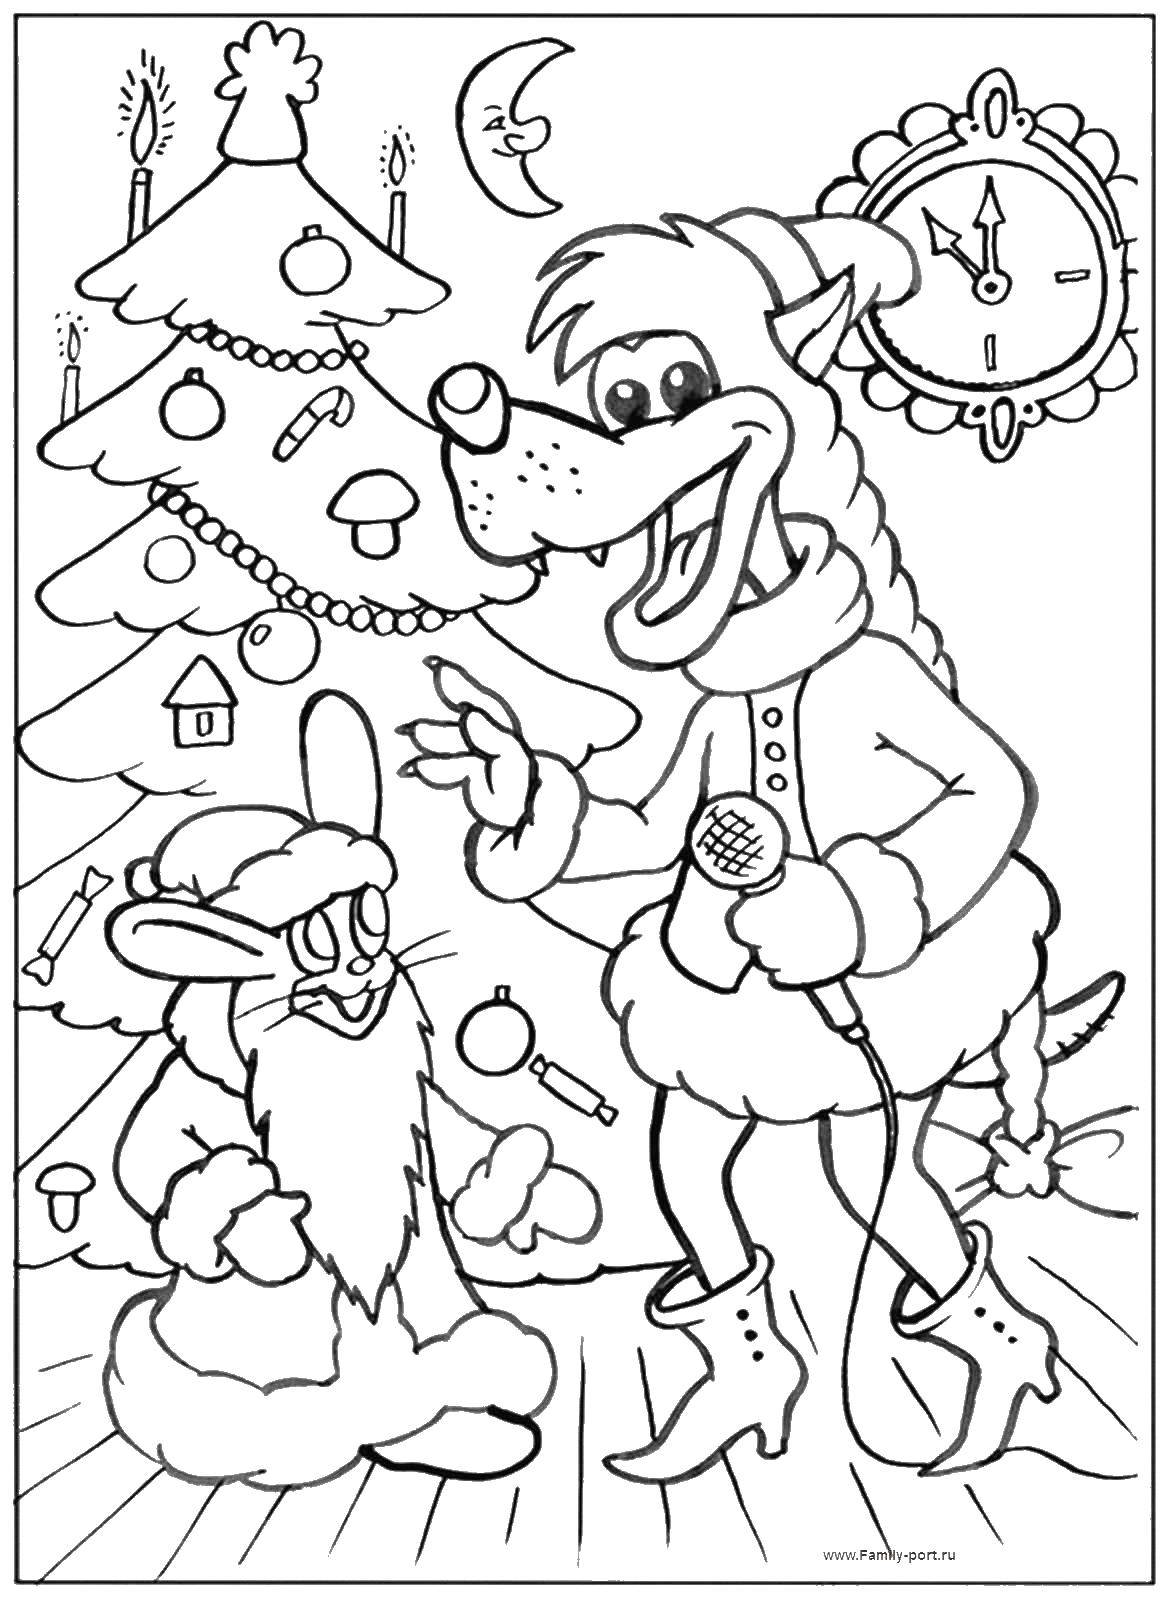 Раскраски к мультфильму Ну погоди, раскраски про волка и зайца для детей  Ну погоди на новый год